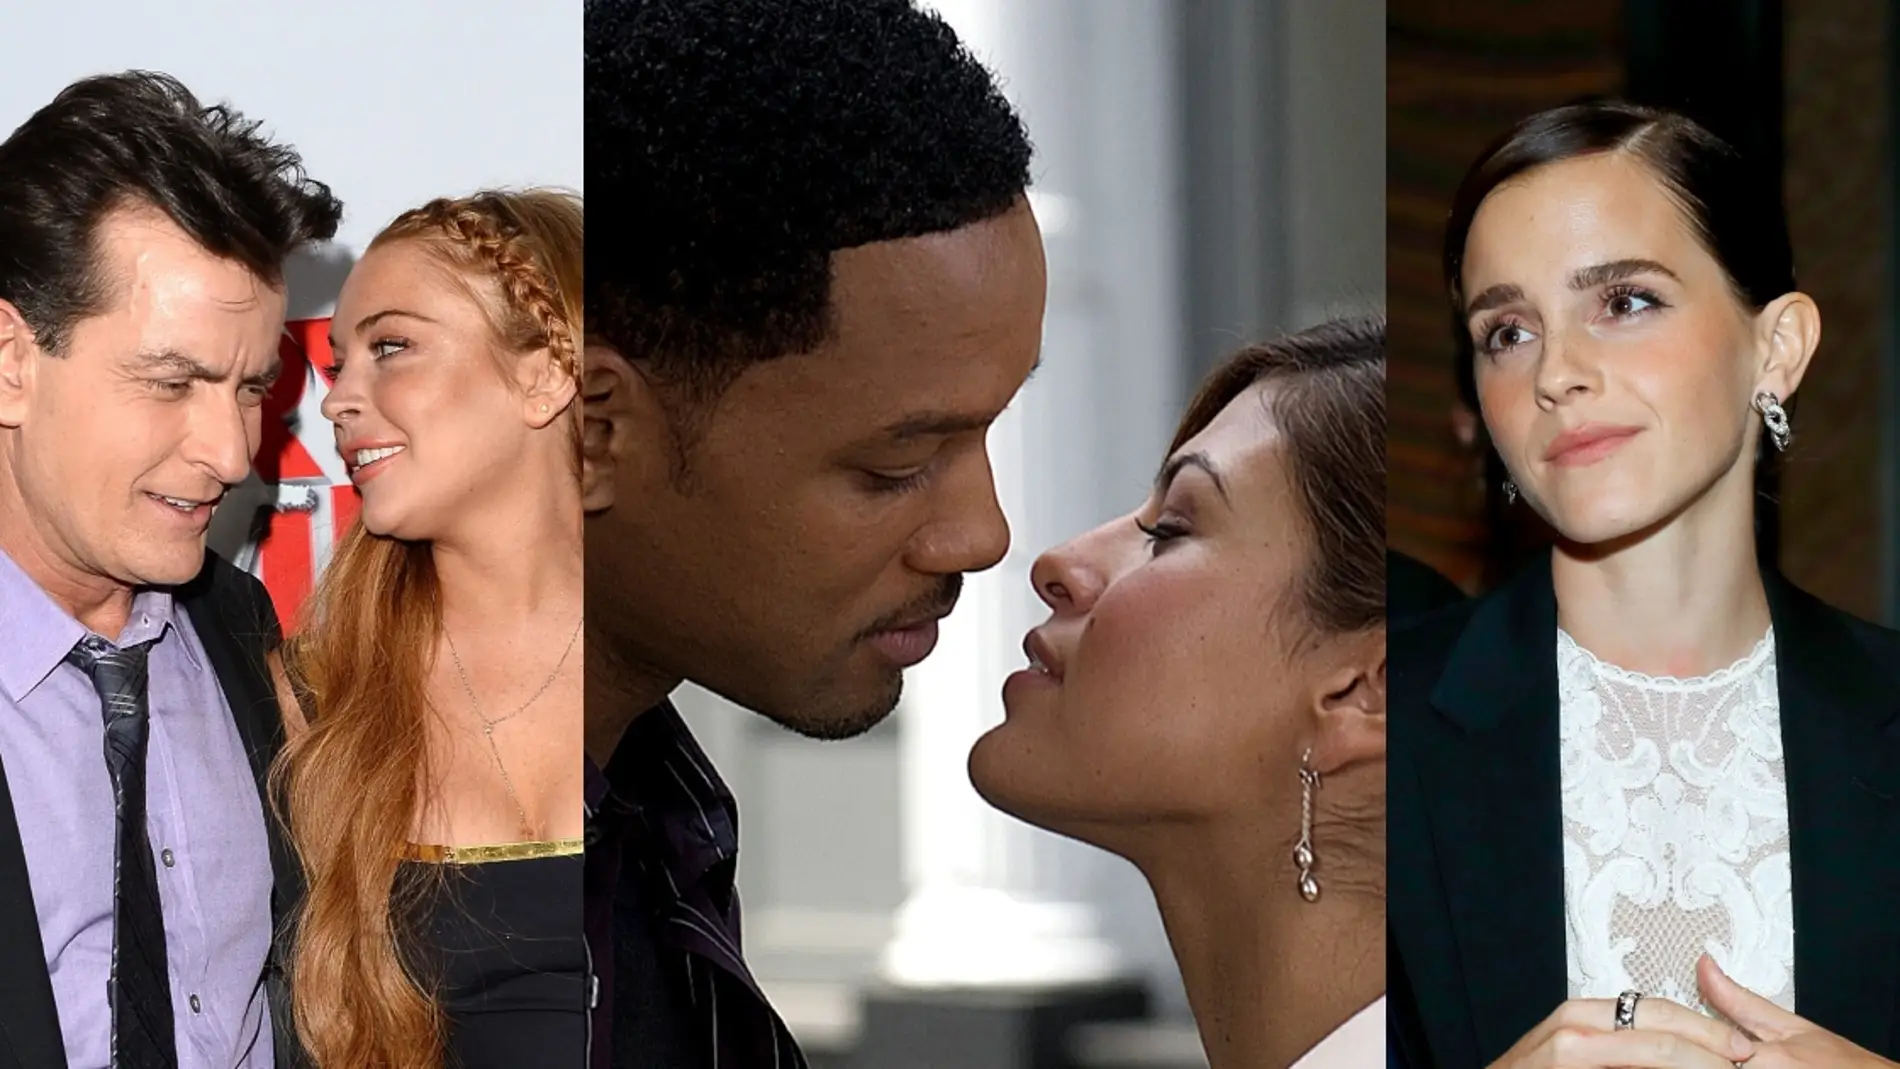 Historia de un no-beso de cine (y de otros terribles): de Lindsay Lohan a Will Smith